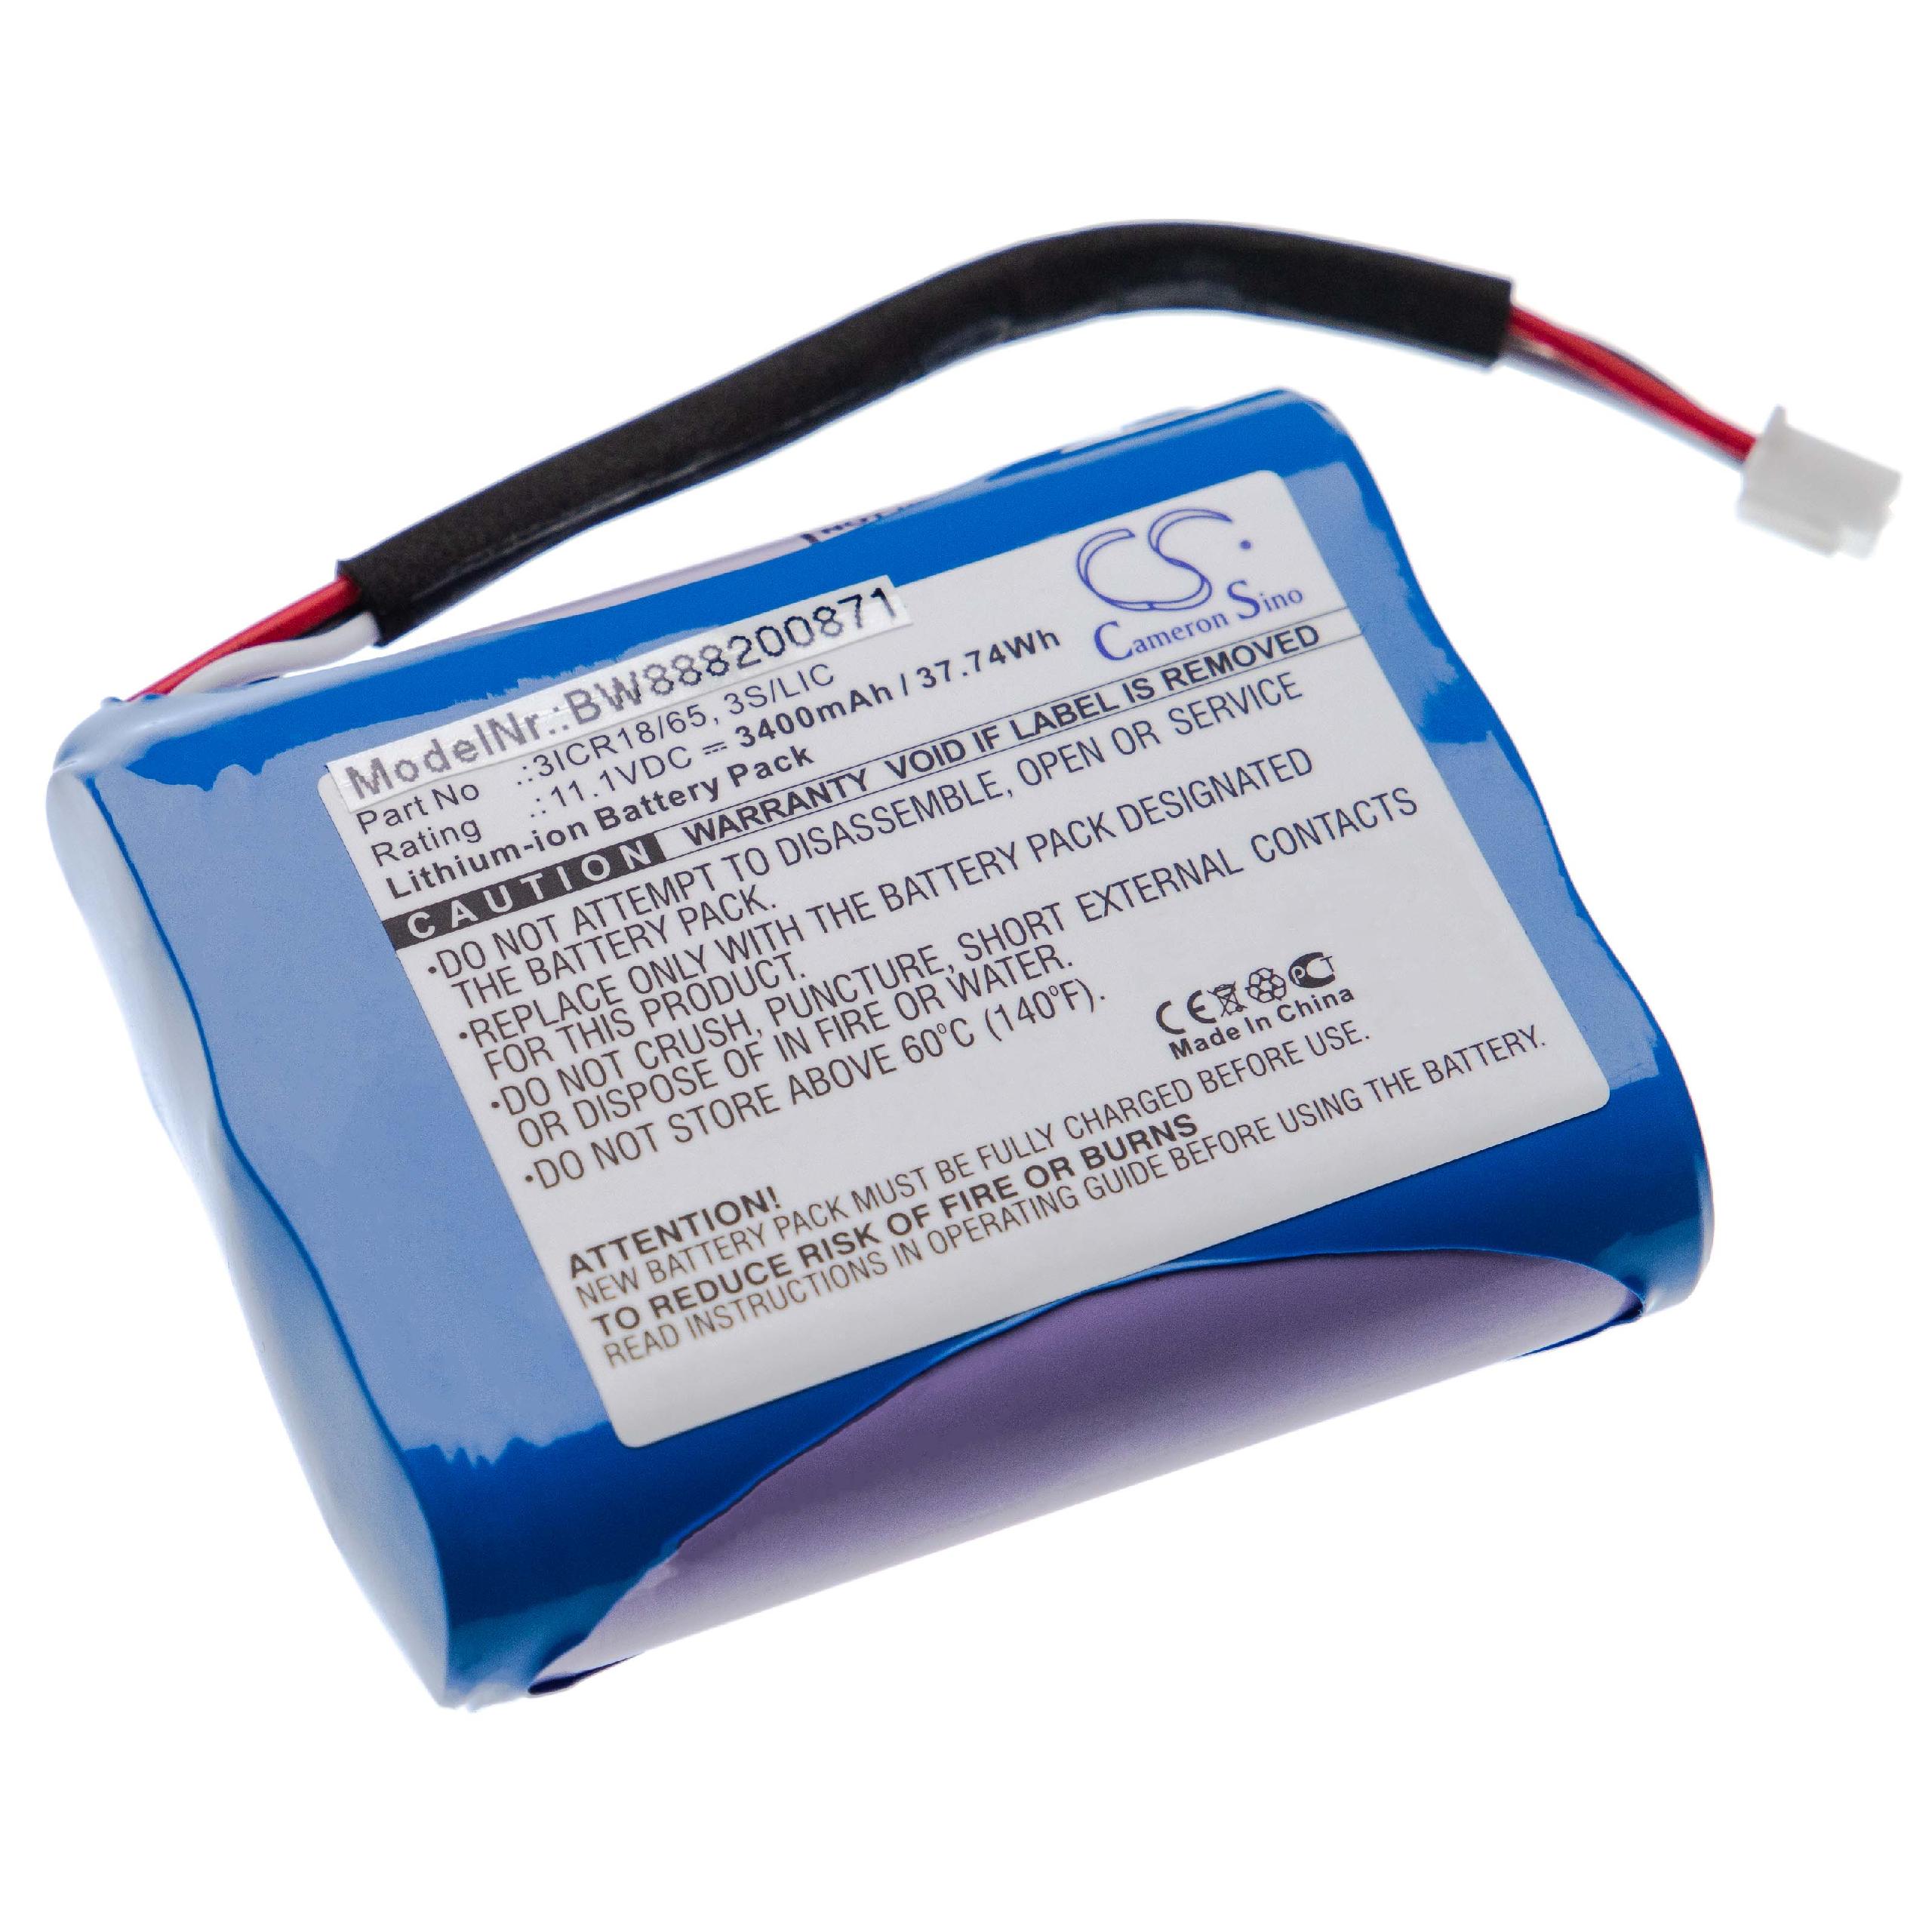 Batterie remplace Bang & Olufsen 3ICR18/65, 3S/LIC pour enceinte Bang & Olufsen - 3400mAh 11,1V Li-ion